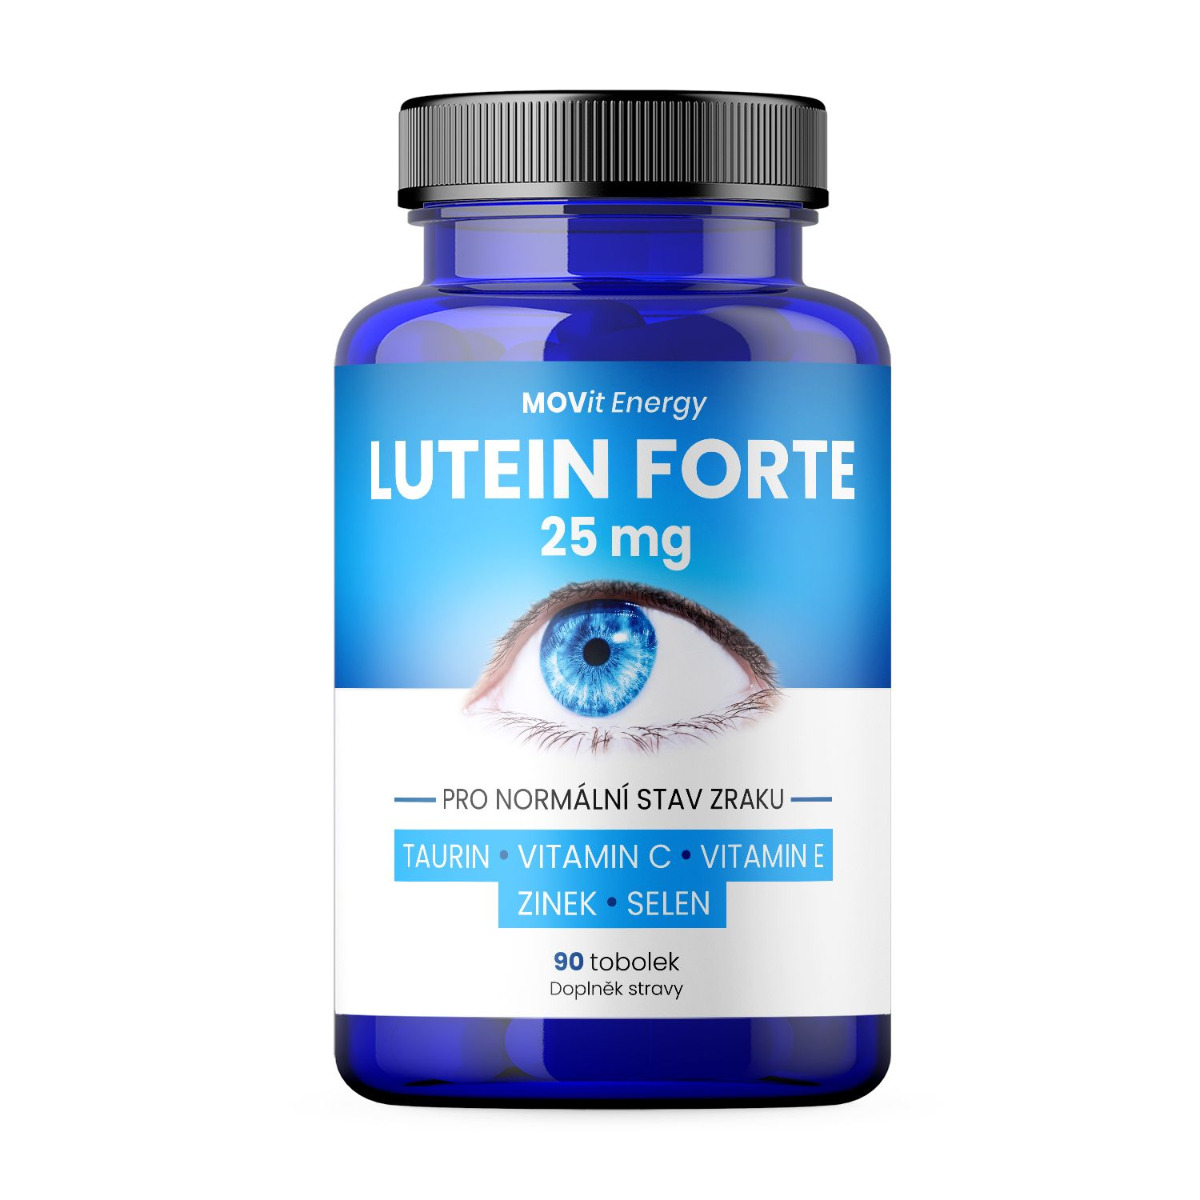 MOVit Energy Lutein Forte 25 mg + Taurin 90 tobolek MOVit Energy